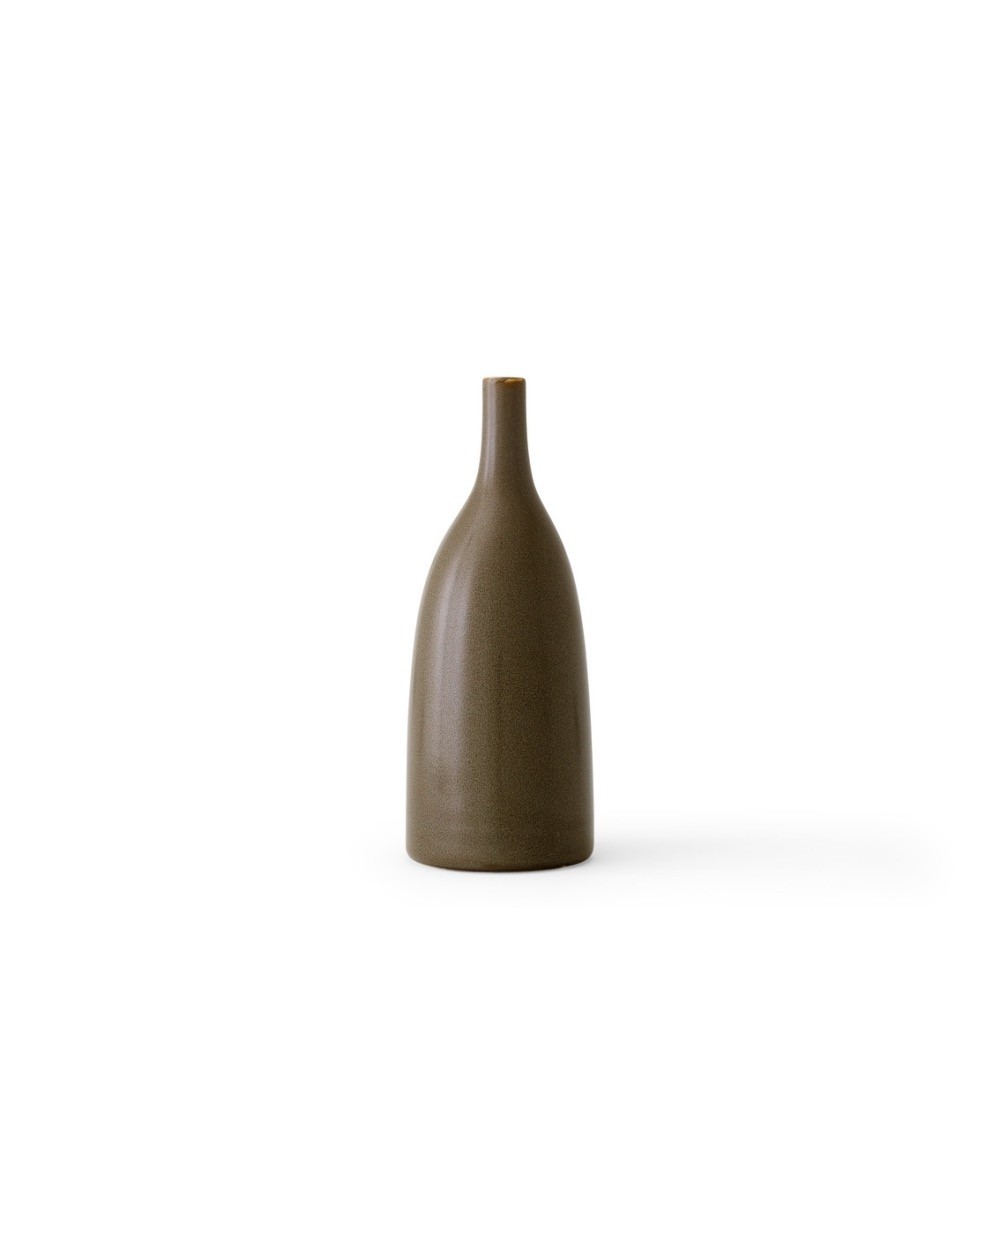 Menu Strandgade Stem Vase H25 Ceramic Fern 